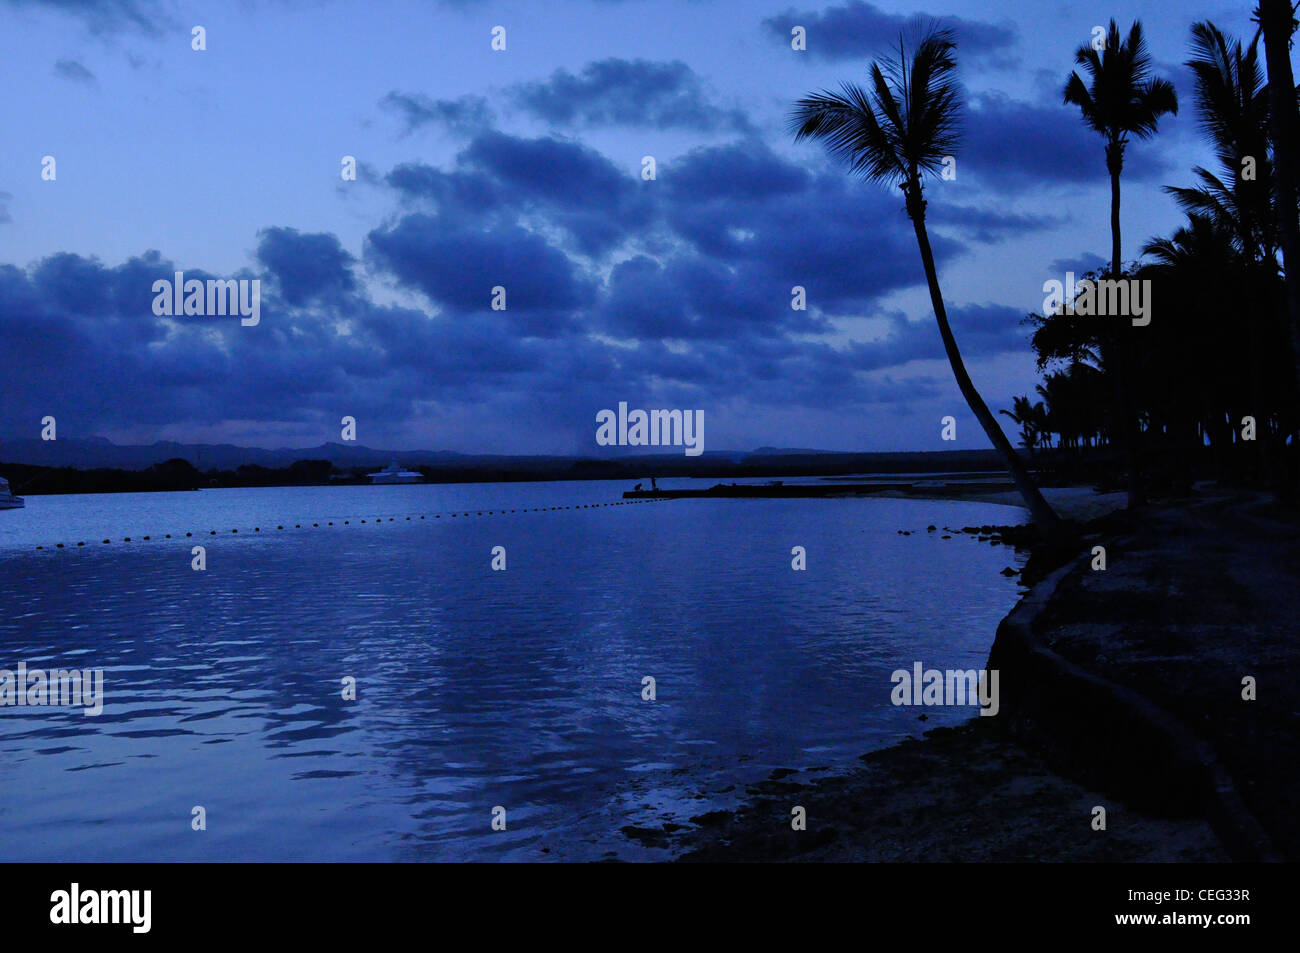 Azul Atardecer / Amanecer espectacular sub palmeras tropicales en silueta Foto de stock